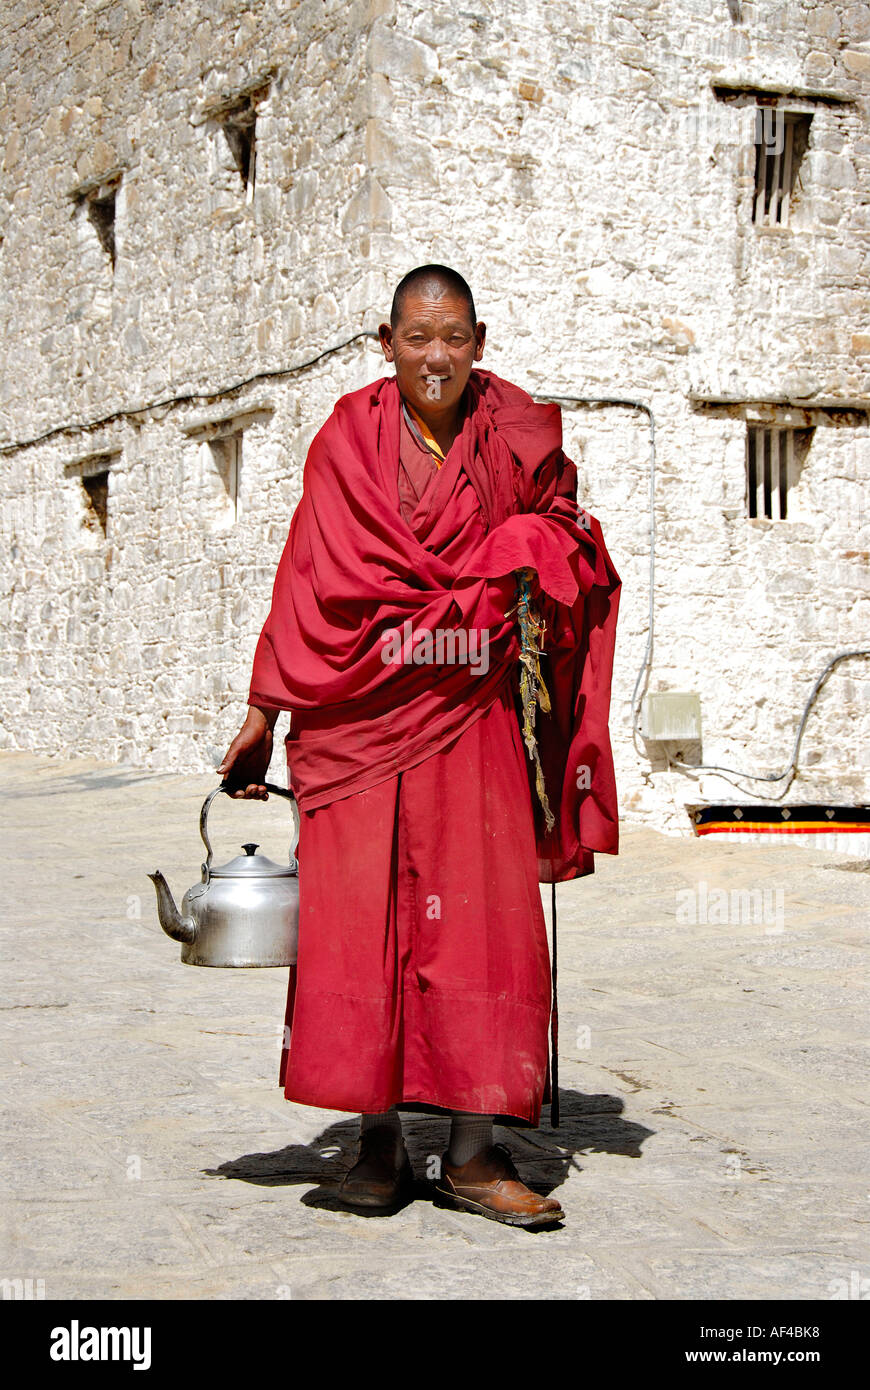 Le moine bouddhiste habillé en robe rouge transporte l'eau pot de Drepung  Lhassa au Tibet Chine Photo Stock - Alamy